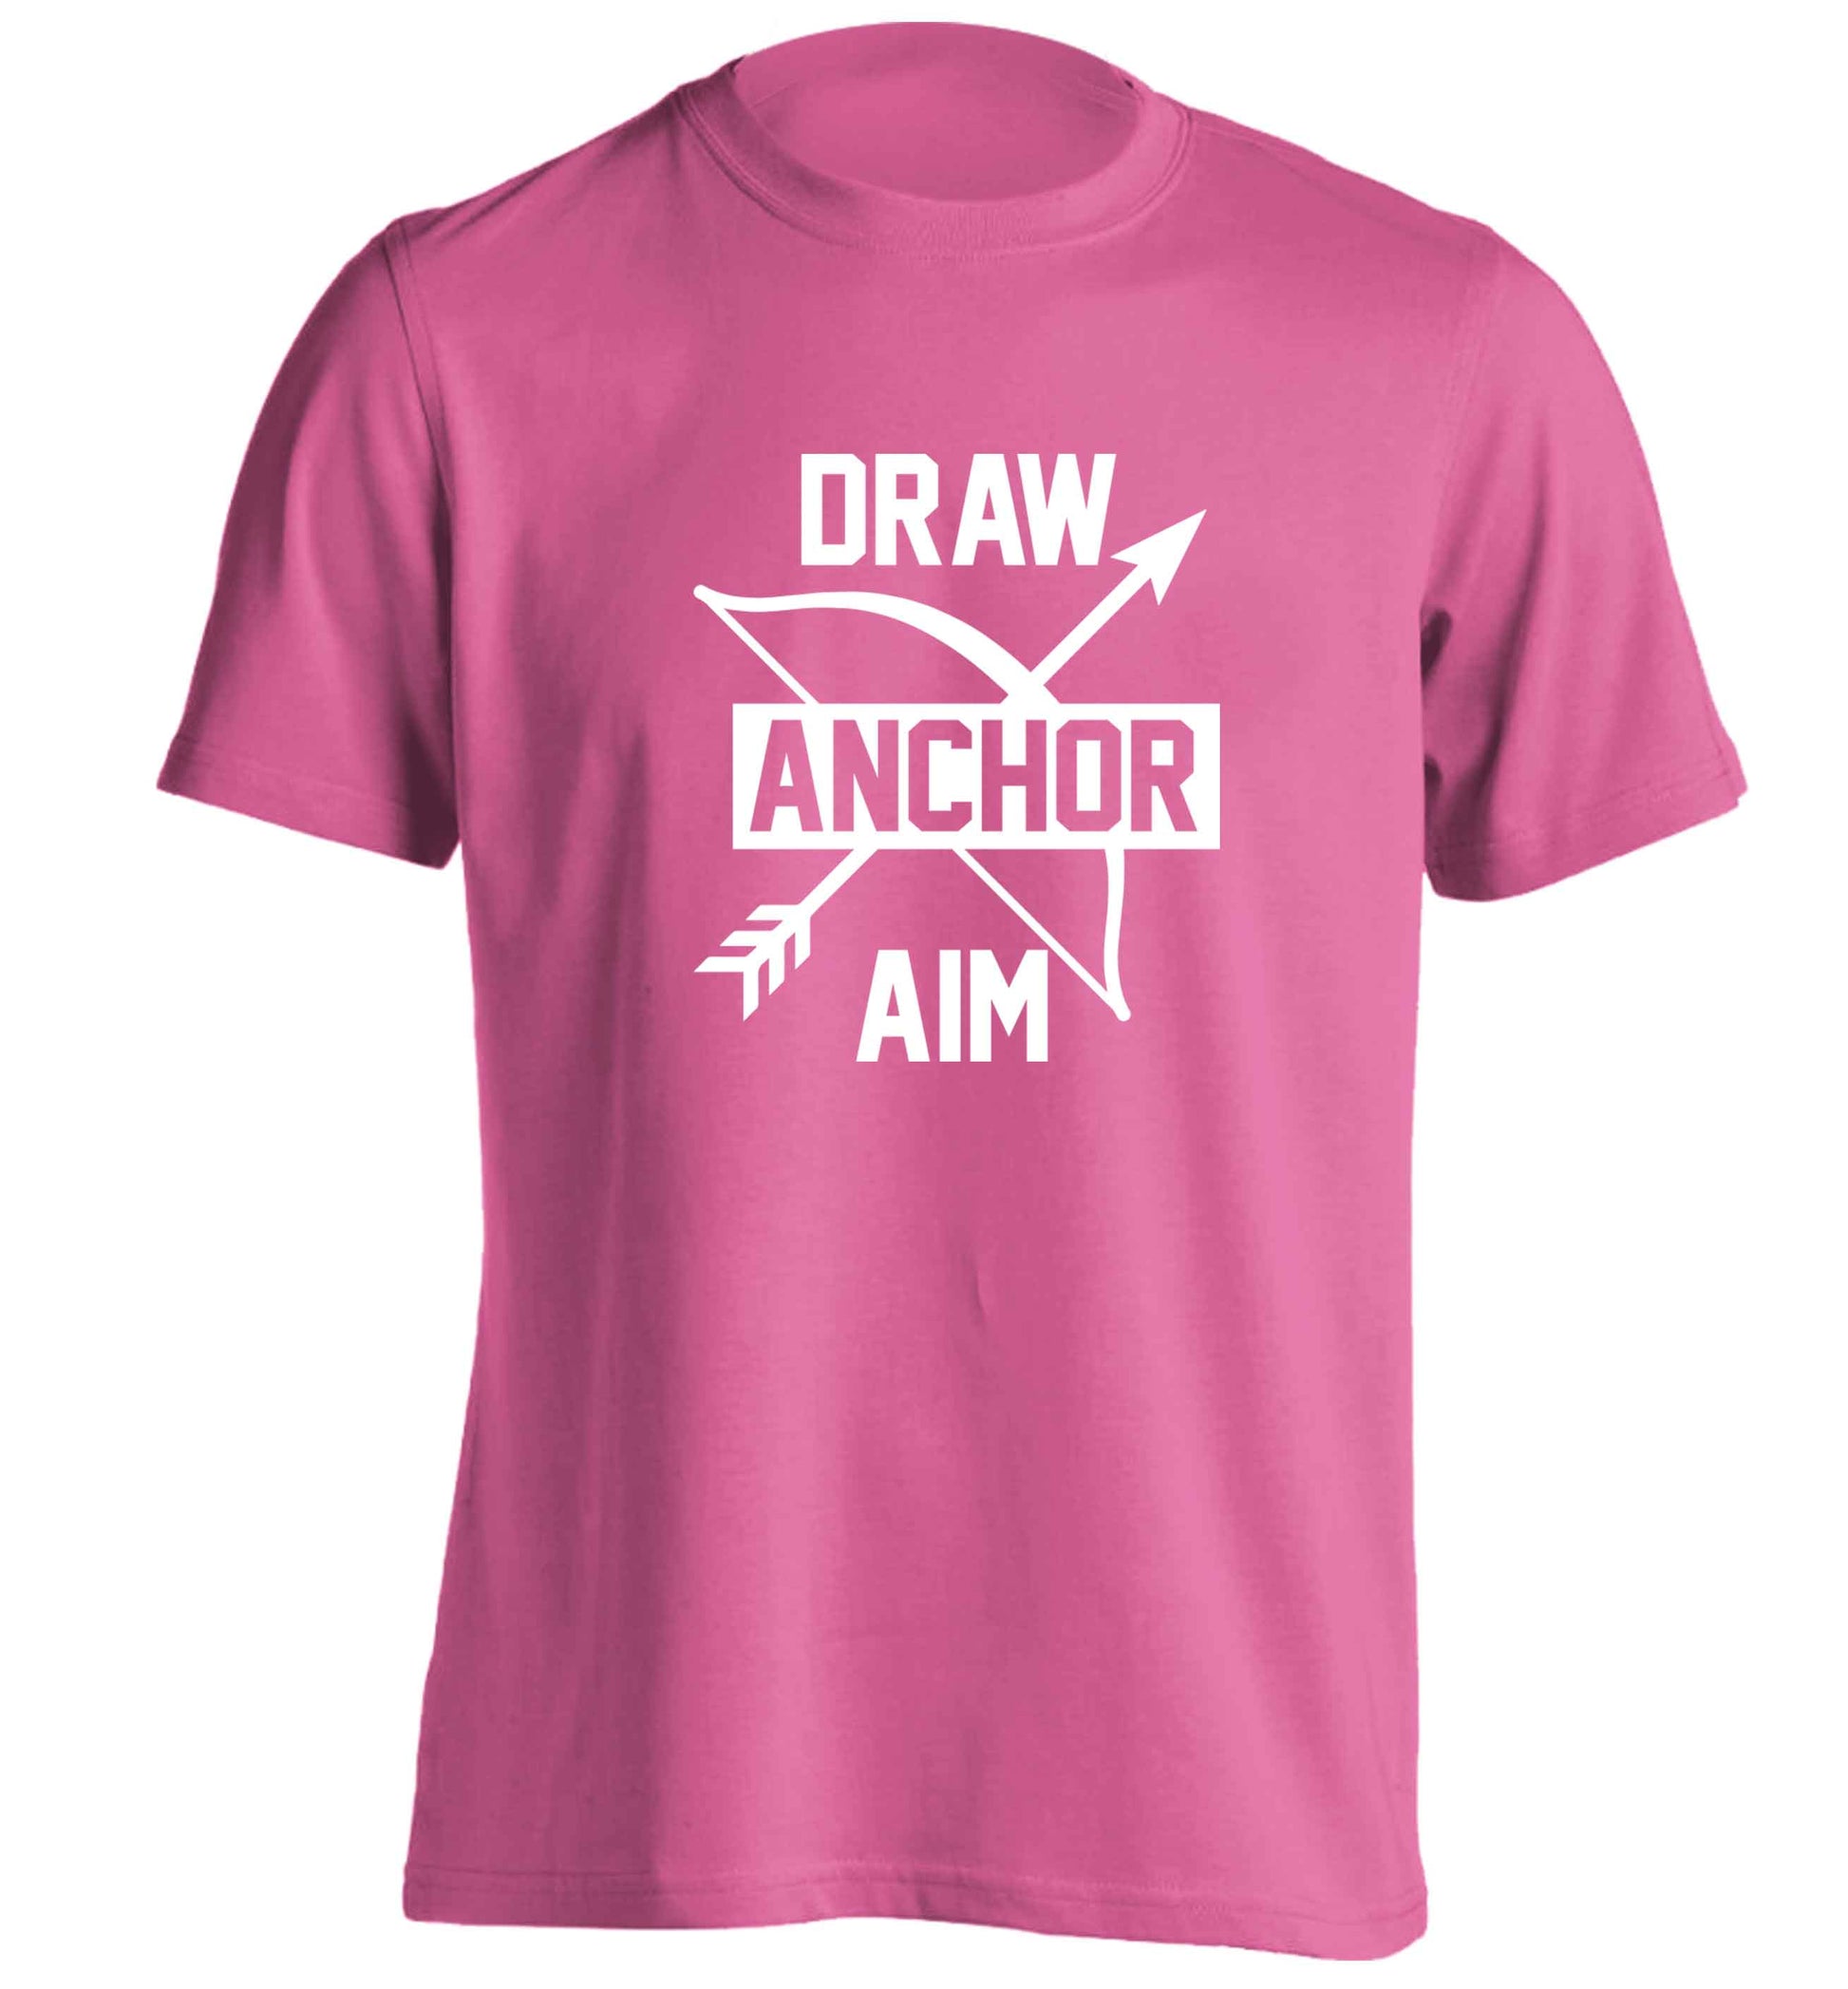 Draw anchor aim adults unisex pink Tshirt 2XL